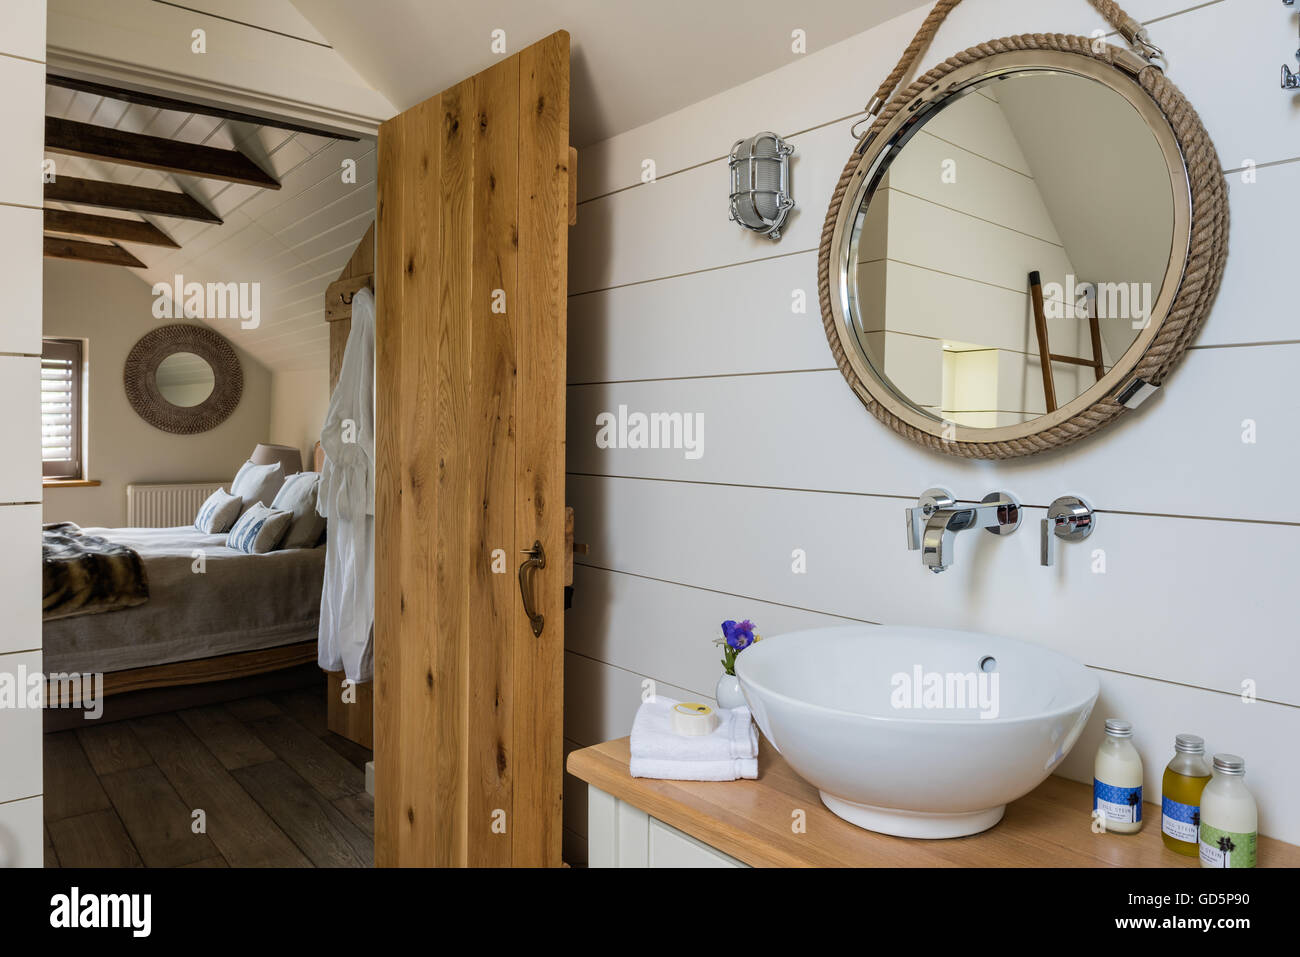 Planches en bois peint en blanc et un style marin miroir dans salle de bain Banque D'Images